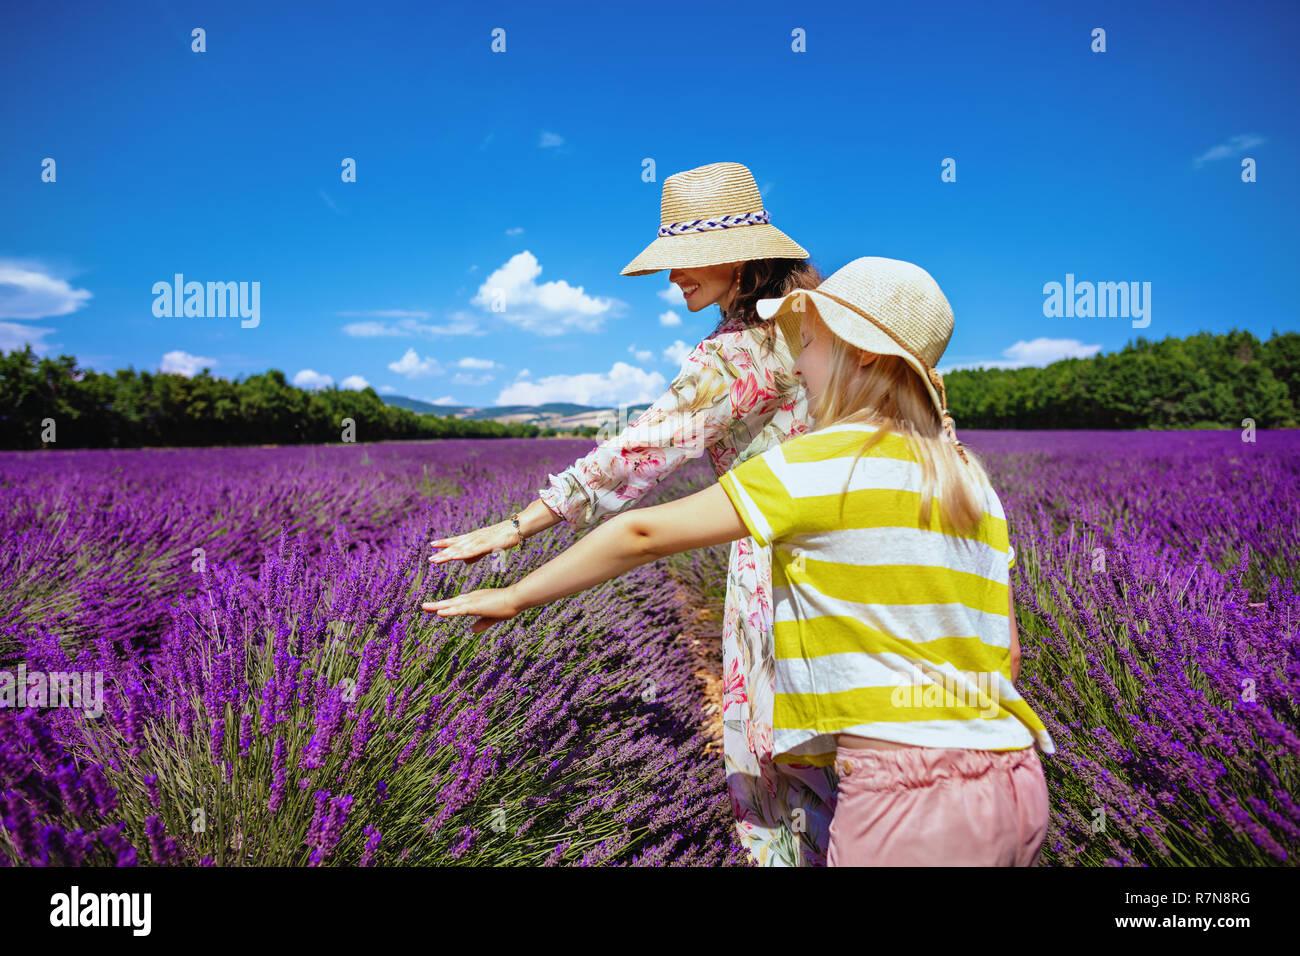 Stilvolle Mutter und Kind im lavendelfeld in der Provence, Frankreich berühren Lavendel. Mont Ventoux, Luberon Apt und Gordes oder geben Ihnen unglaubliche Bild Stockfoto